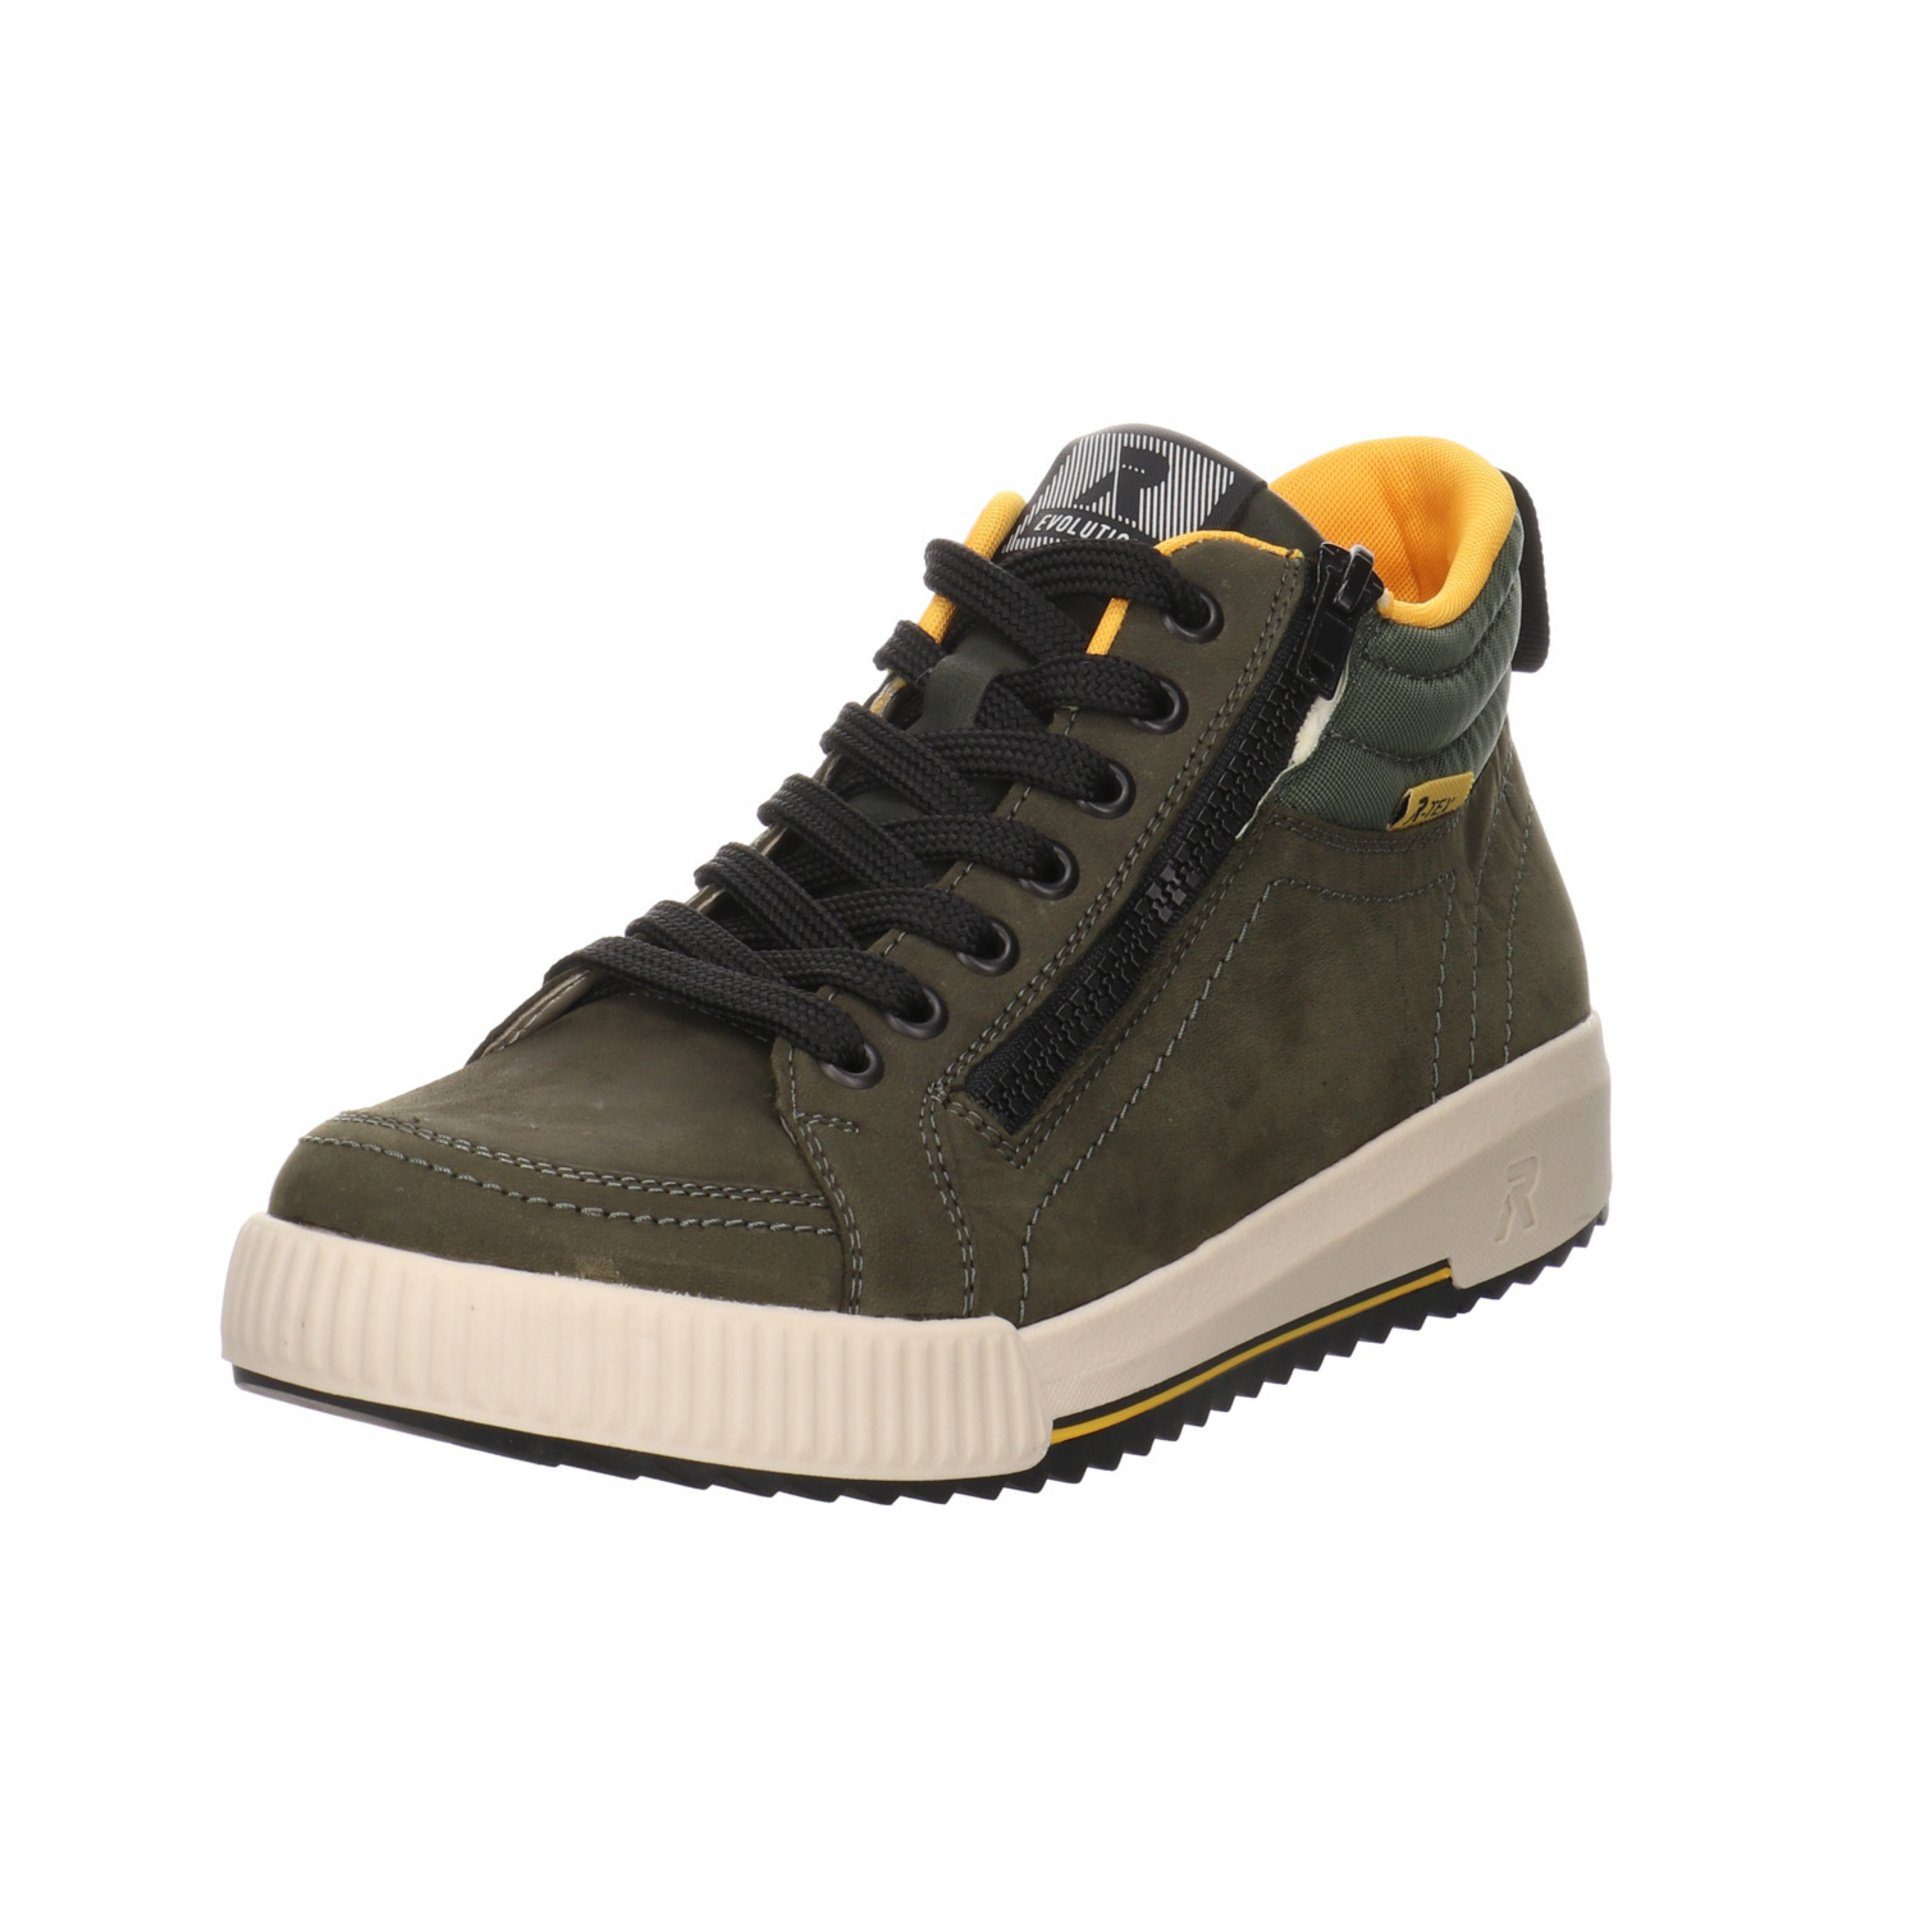 Rieker Damen Stiefeletten Schuhe R-Evolution Boots Schnürstiefelette Leder-/Textilkombination moor/olive/forest